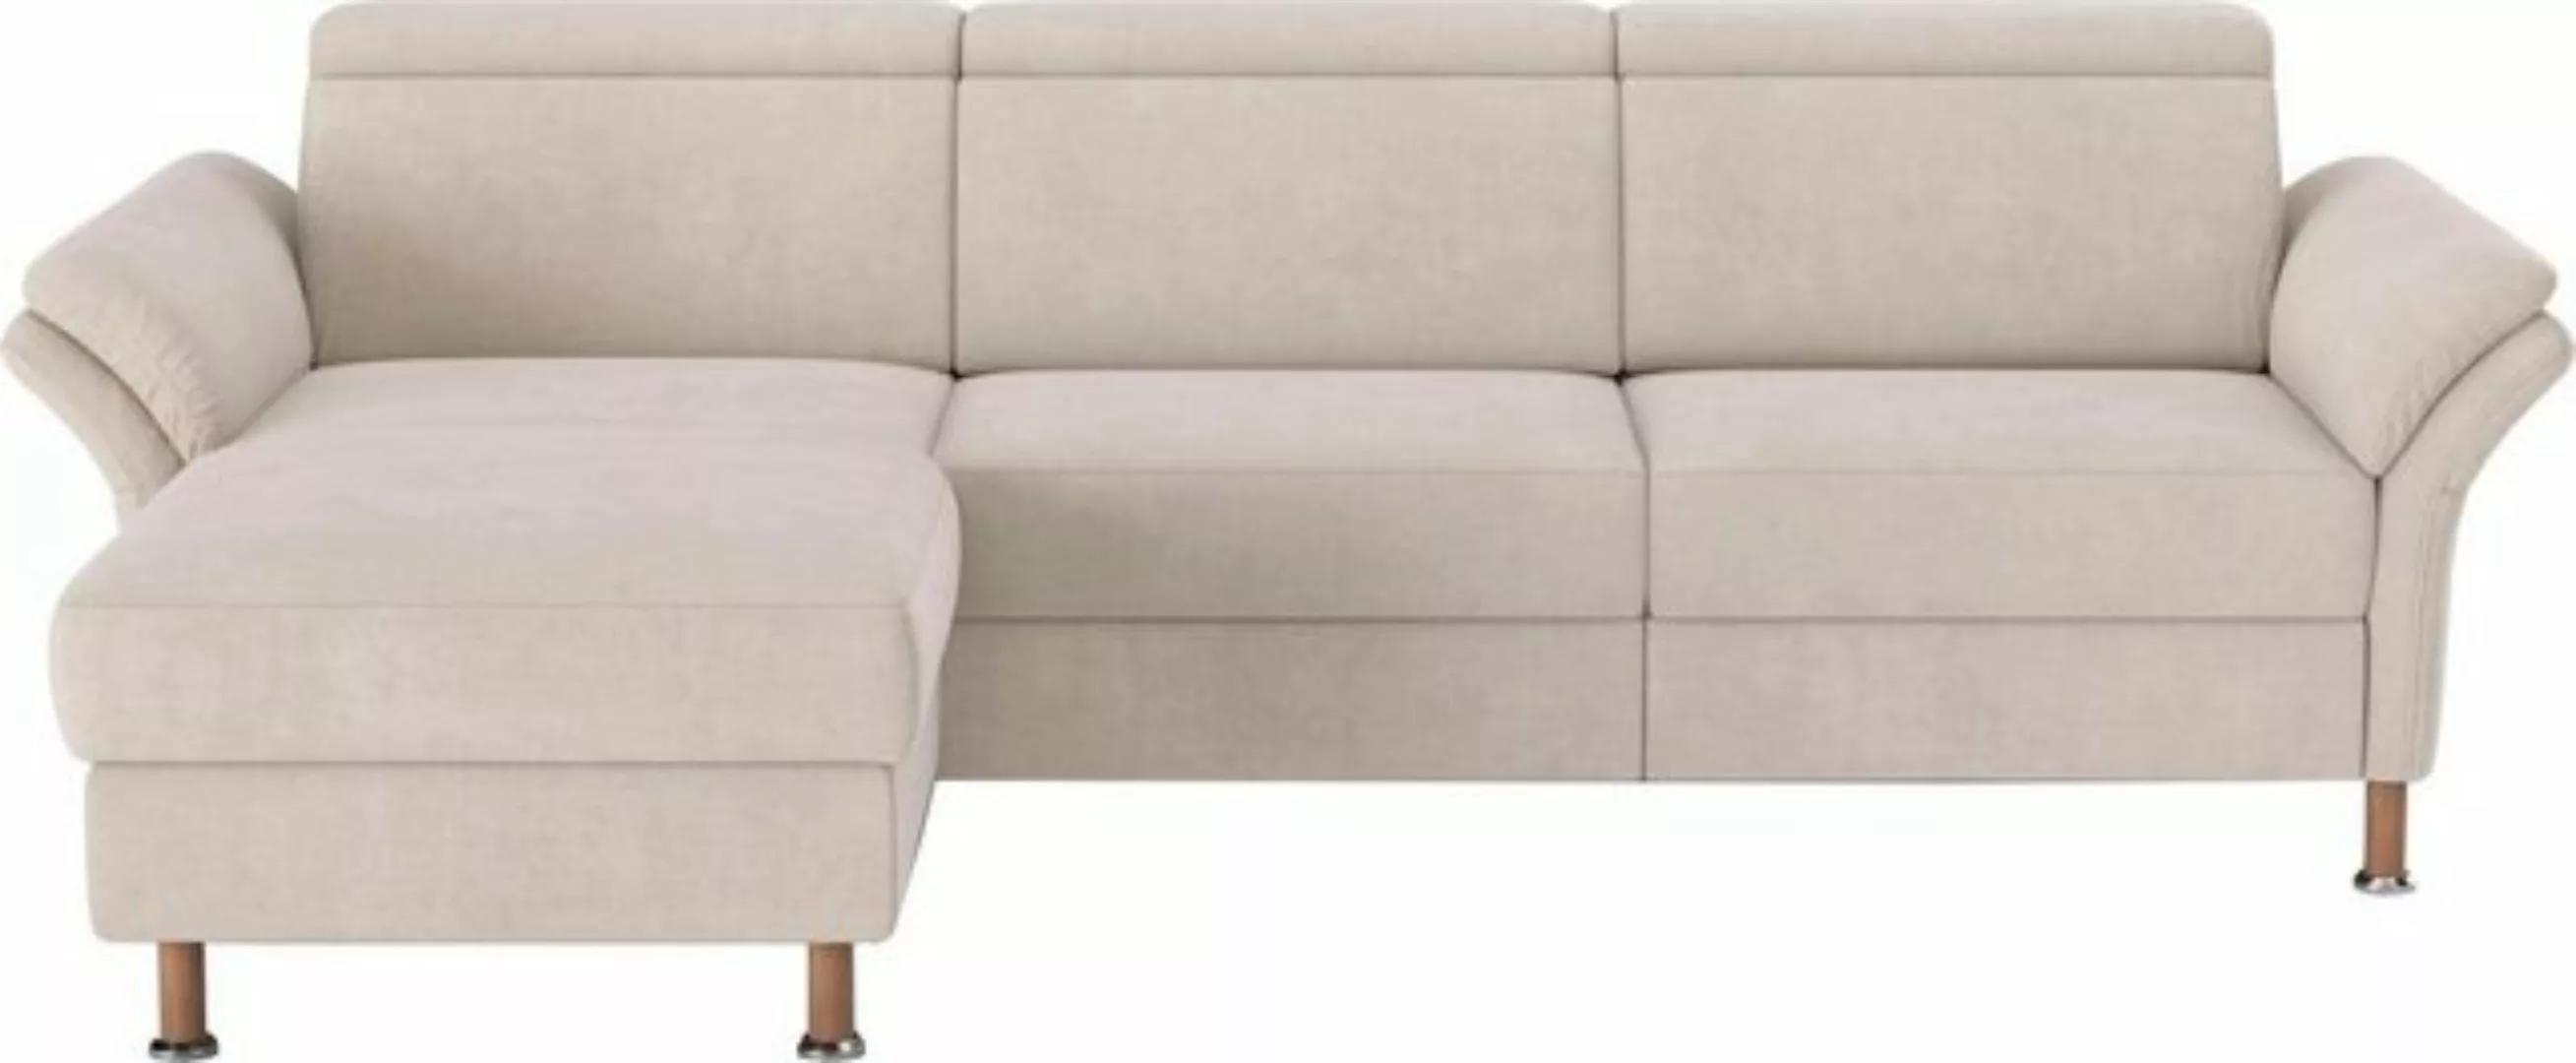 Home affaire Ecksofa Calypso L-Form, mit motorischen Funktionen im Sofa und günstig online kaufen